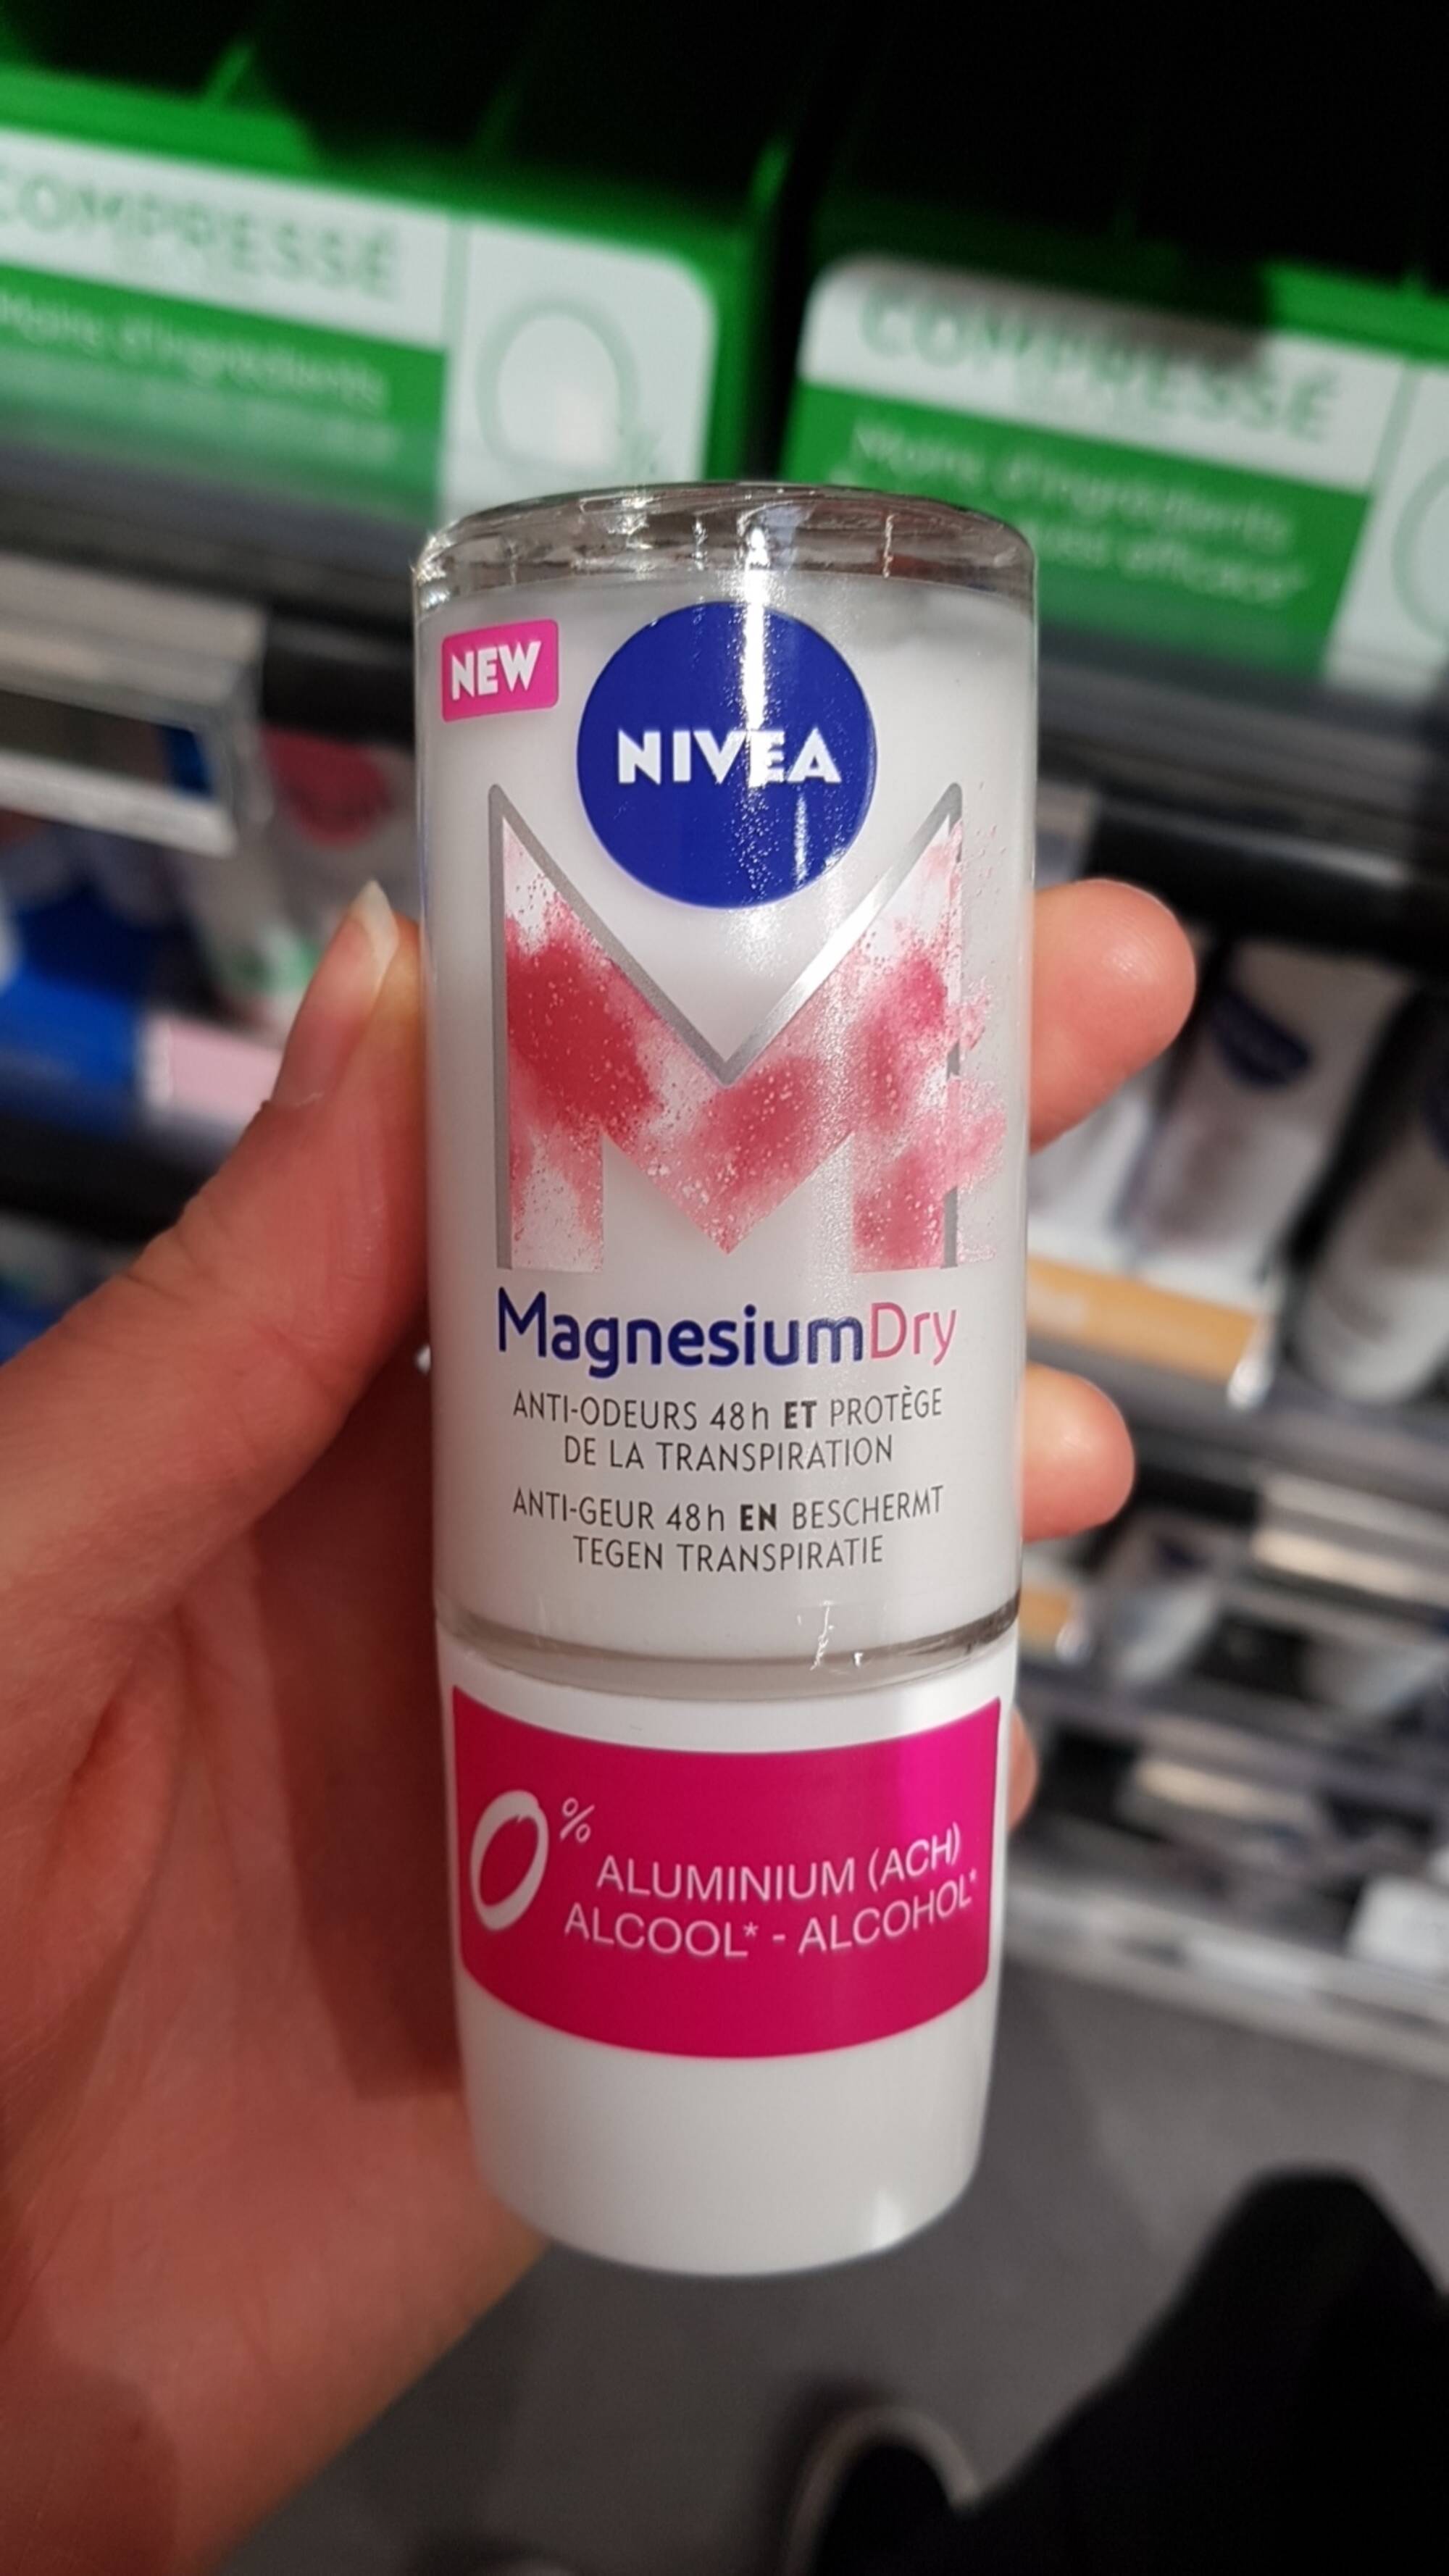 NIVEA - Magnesium dry - Anti-odeurs 48h